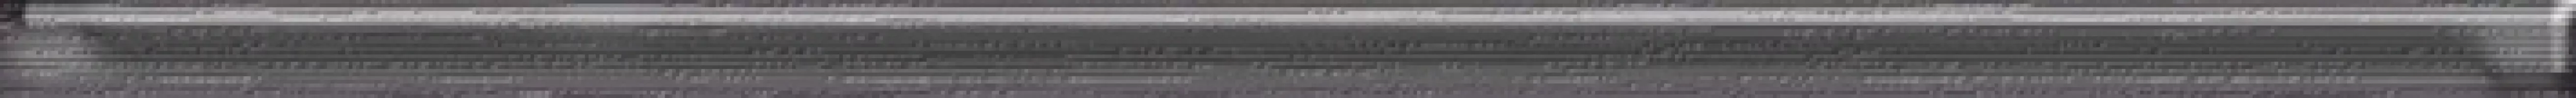 Плитка настенная Cerrol 60x2 бордюр czara listwa szklana Fibra глянцевая глазурованная